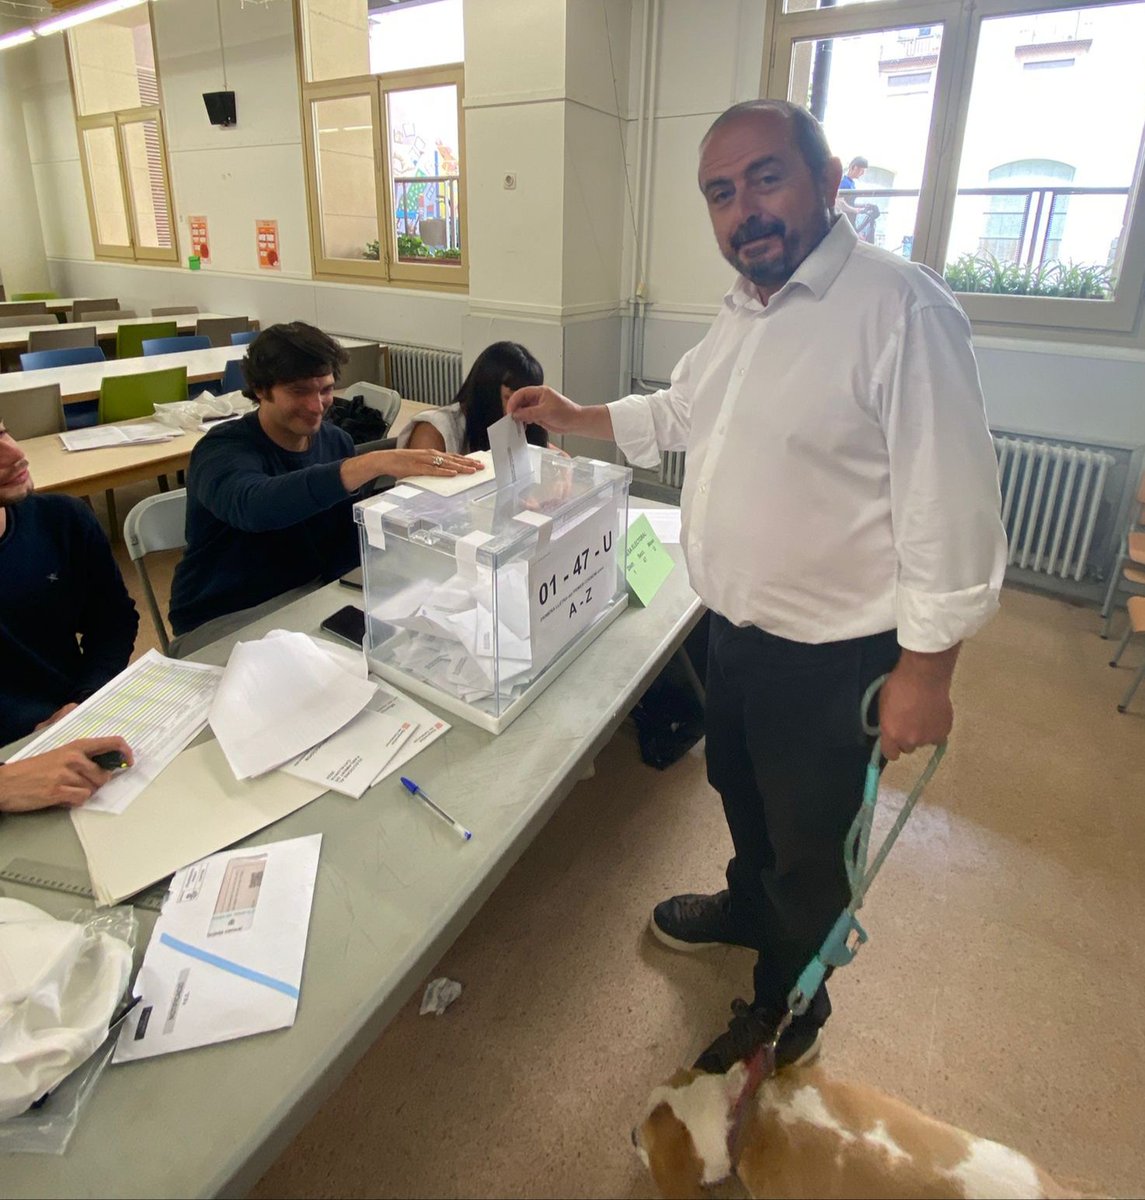 Votació de Jaume Guardans Cambó, membre del comitè directiu d'@UnitsCat i candidat per #Barcelona de @socialistes_cat i #UnitsPerAvncar. #12M Eleccions al @parlamentcat